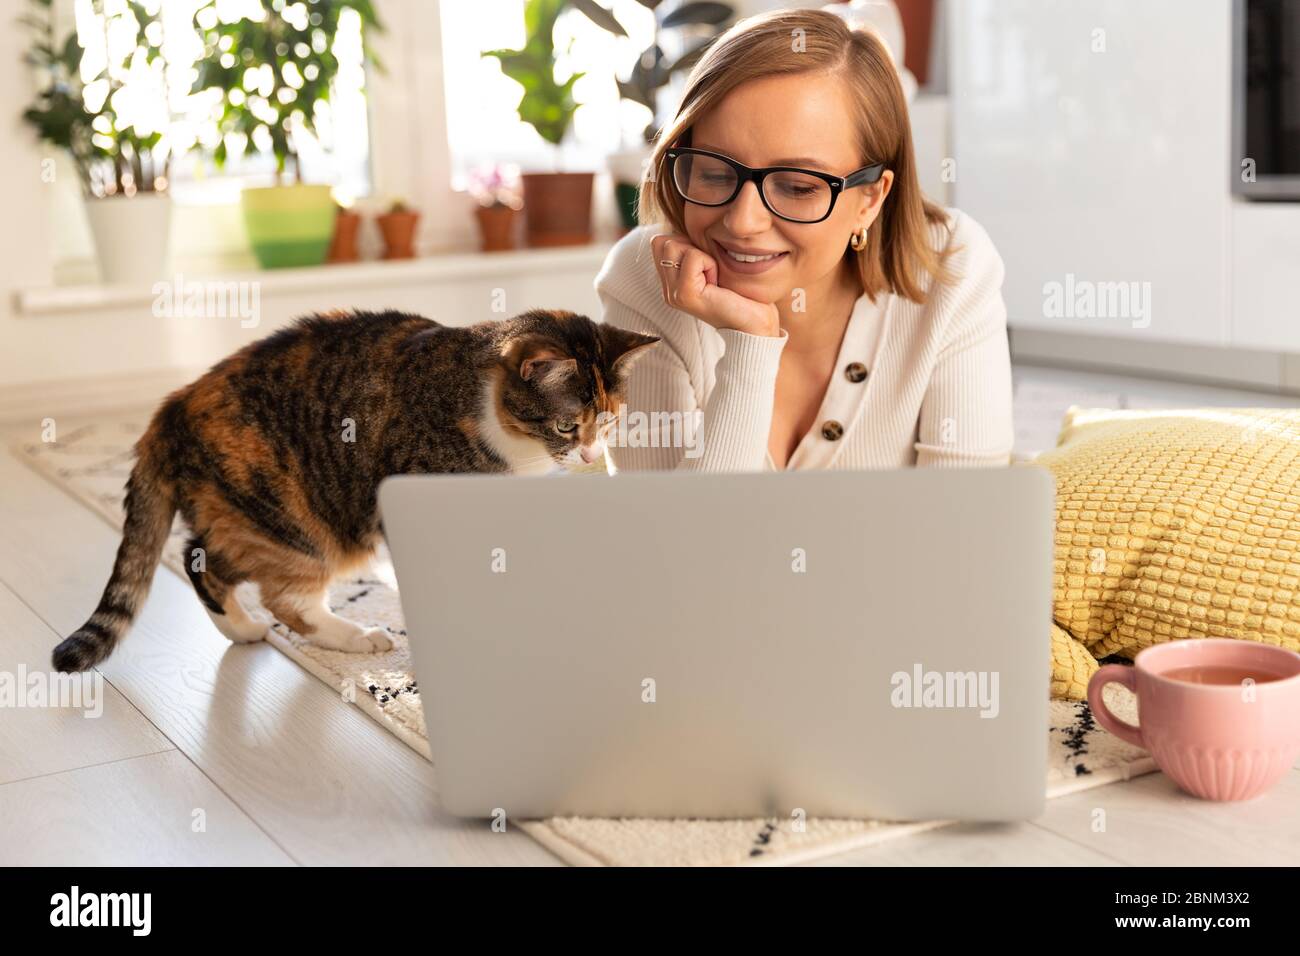 Freiberufliche Frau liegt im Wohnzimmer auf dem Teppich, Webinar ansehen. Frau mit ihrer Katze im Gespräch durch Video-Chat mit ihrer Familie, die in Isolation sind Dur Stockfoto